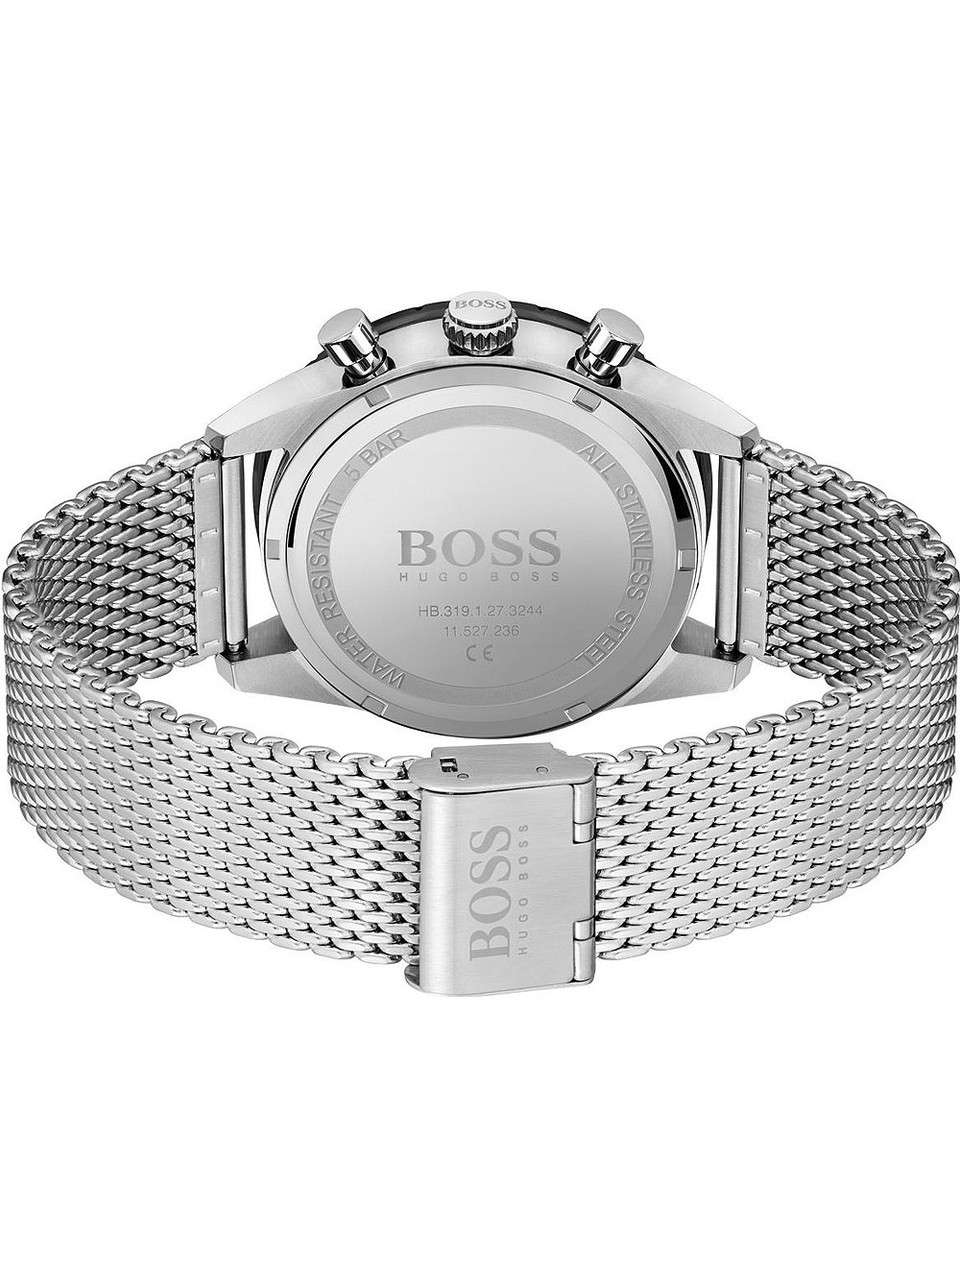 Hugo Boss 1513886 Pilot 44mm chrono Genuine 5ATM Watches owlica | - Edition